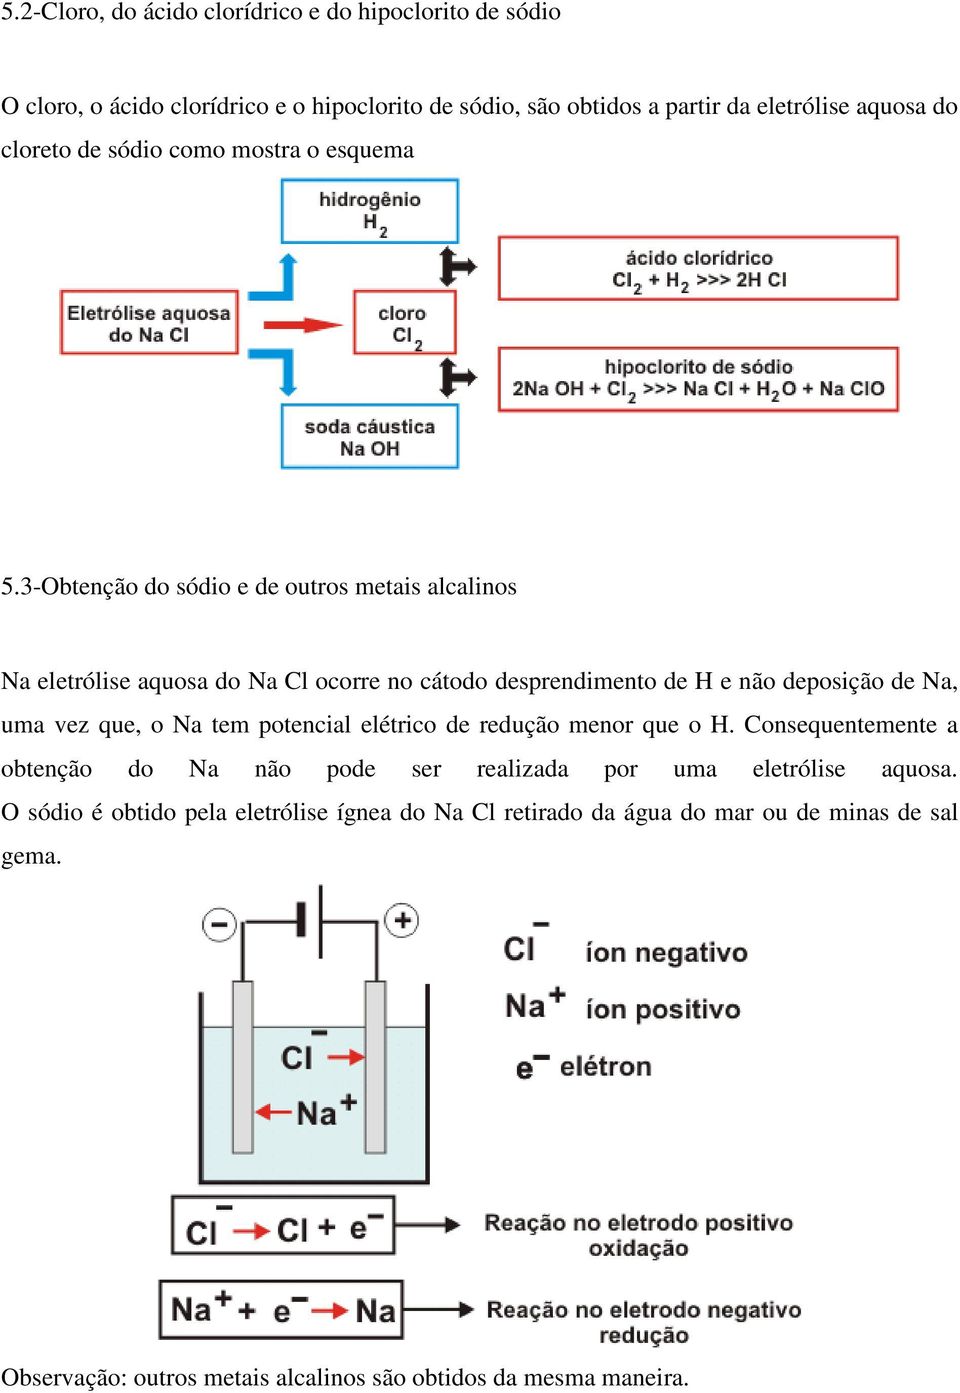 3-Obtenção do sódio e de outros metais alcalinos Na eletrólise aquosa do Na Cl ocorre no cátodo desprendimento de H e não deposição de Na, uma vez que, o Na tem